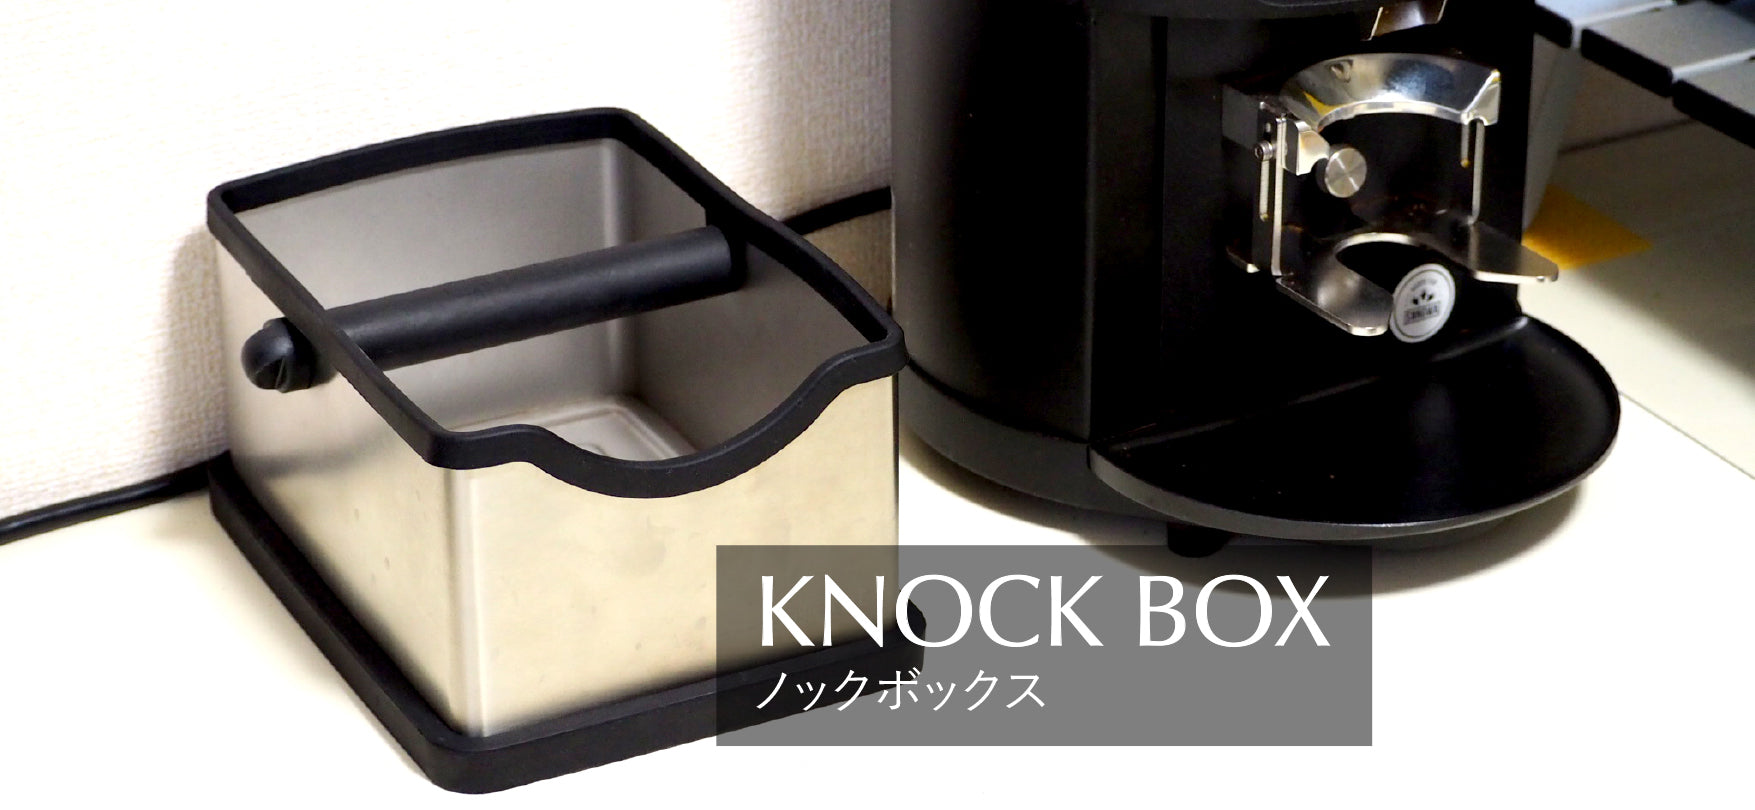 Knockbox